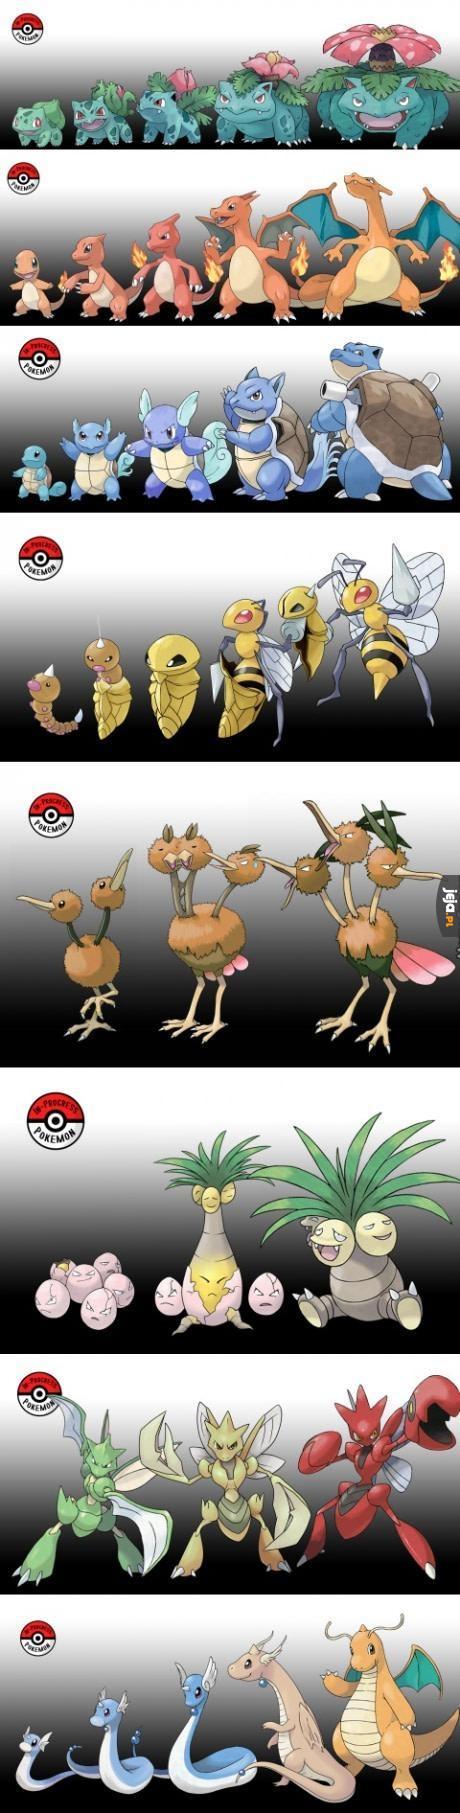 Gdyby Pokemony ewoluowały stopniowo